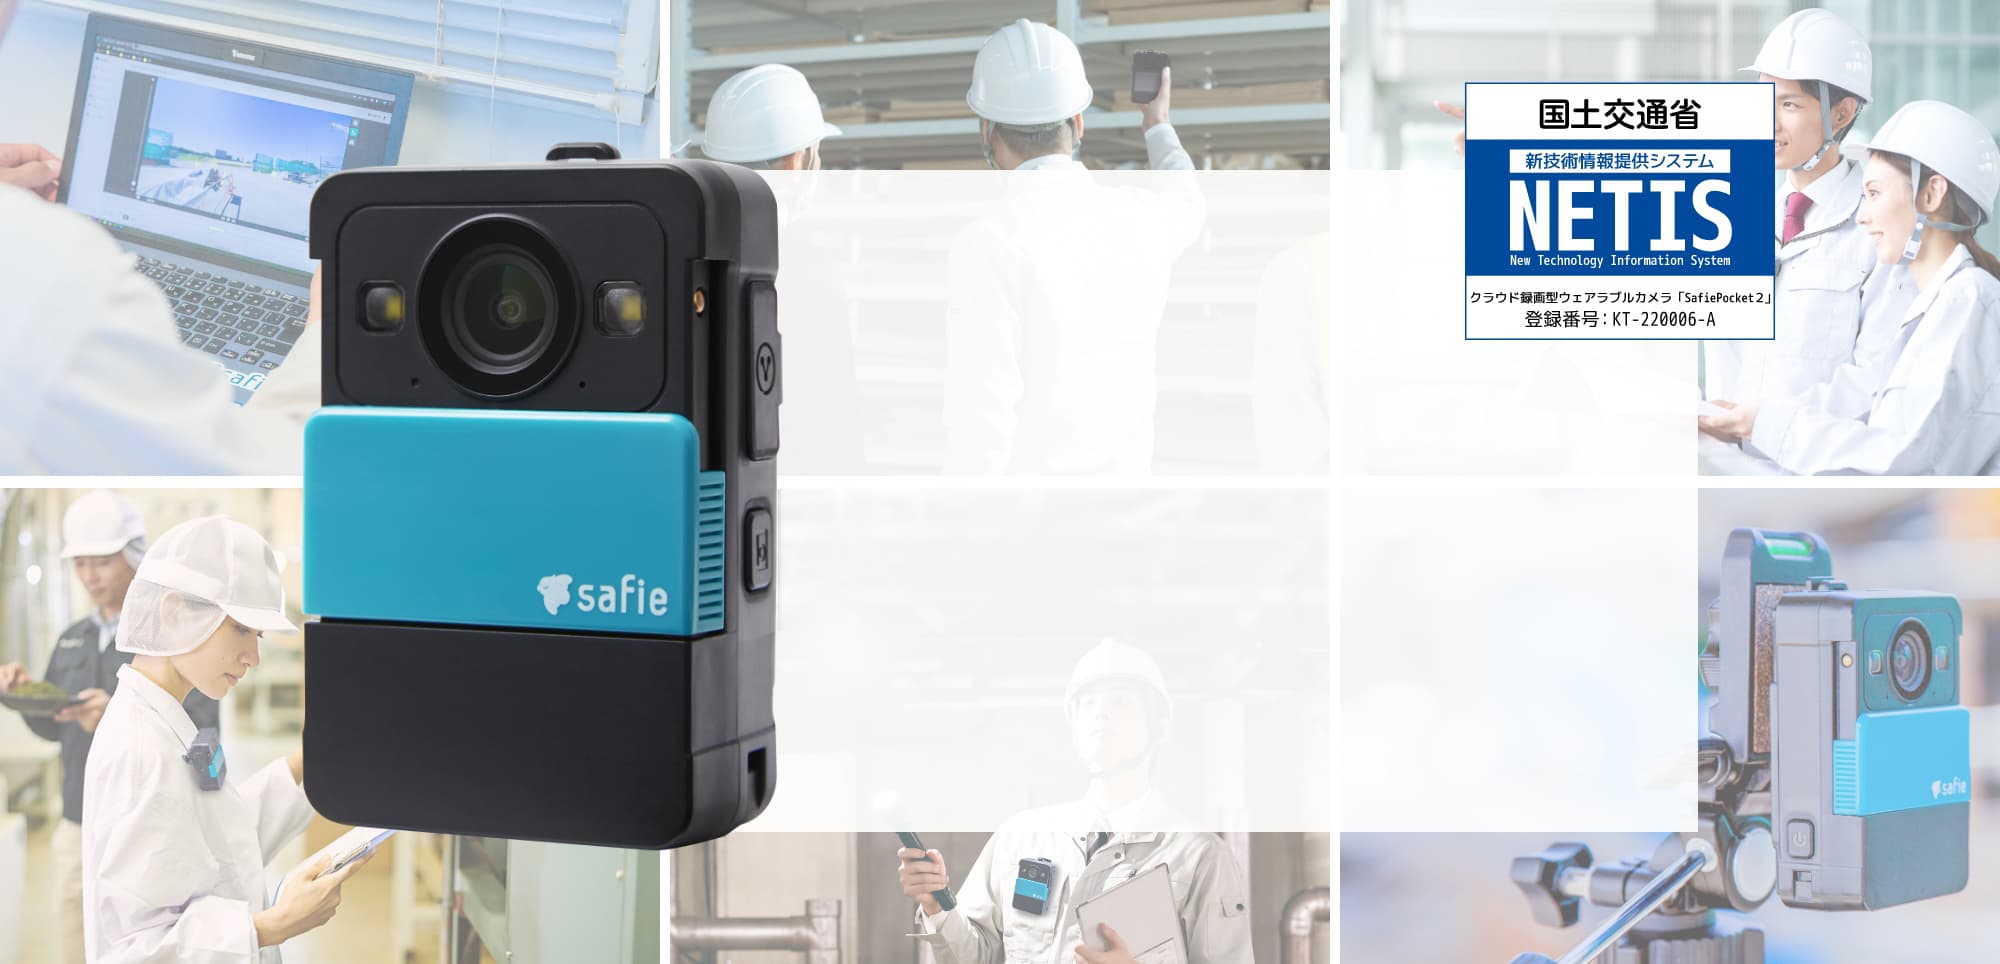 遠隔業務用ウェアラブルカメラ 国土交通省 新技術情報提供システム NETIS クラウド録画型ウェアラブルカメラ「Safie Pocket２」 登録番号 : KT-220006-A